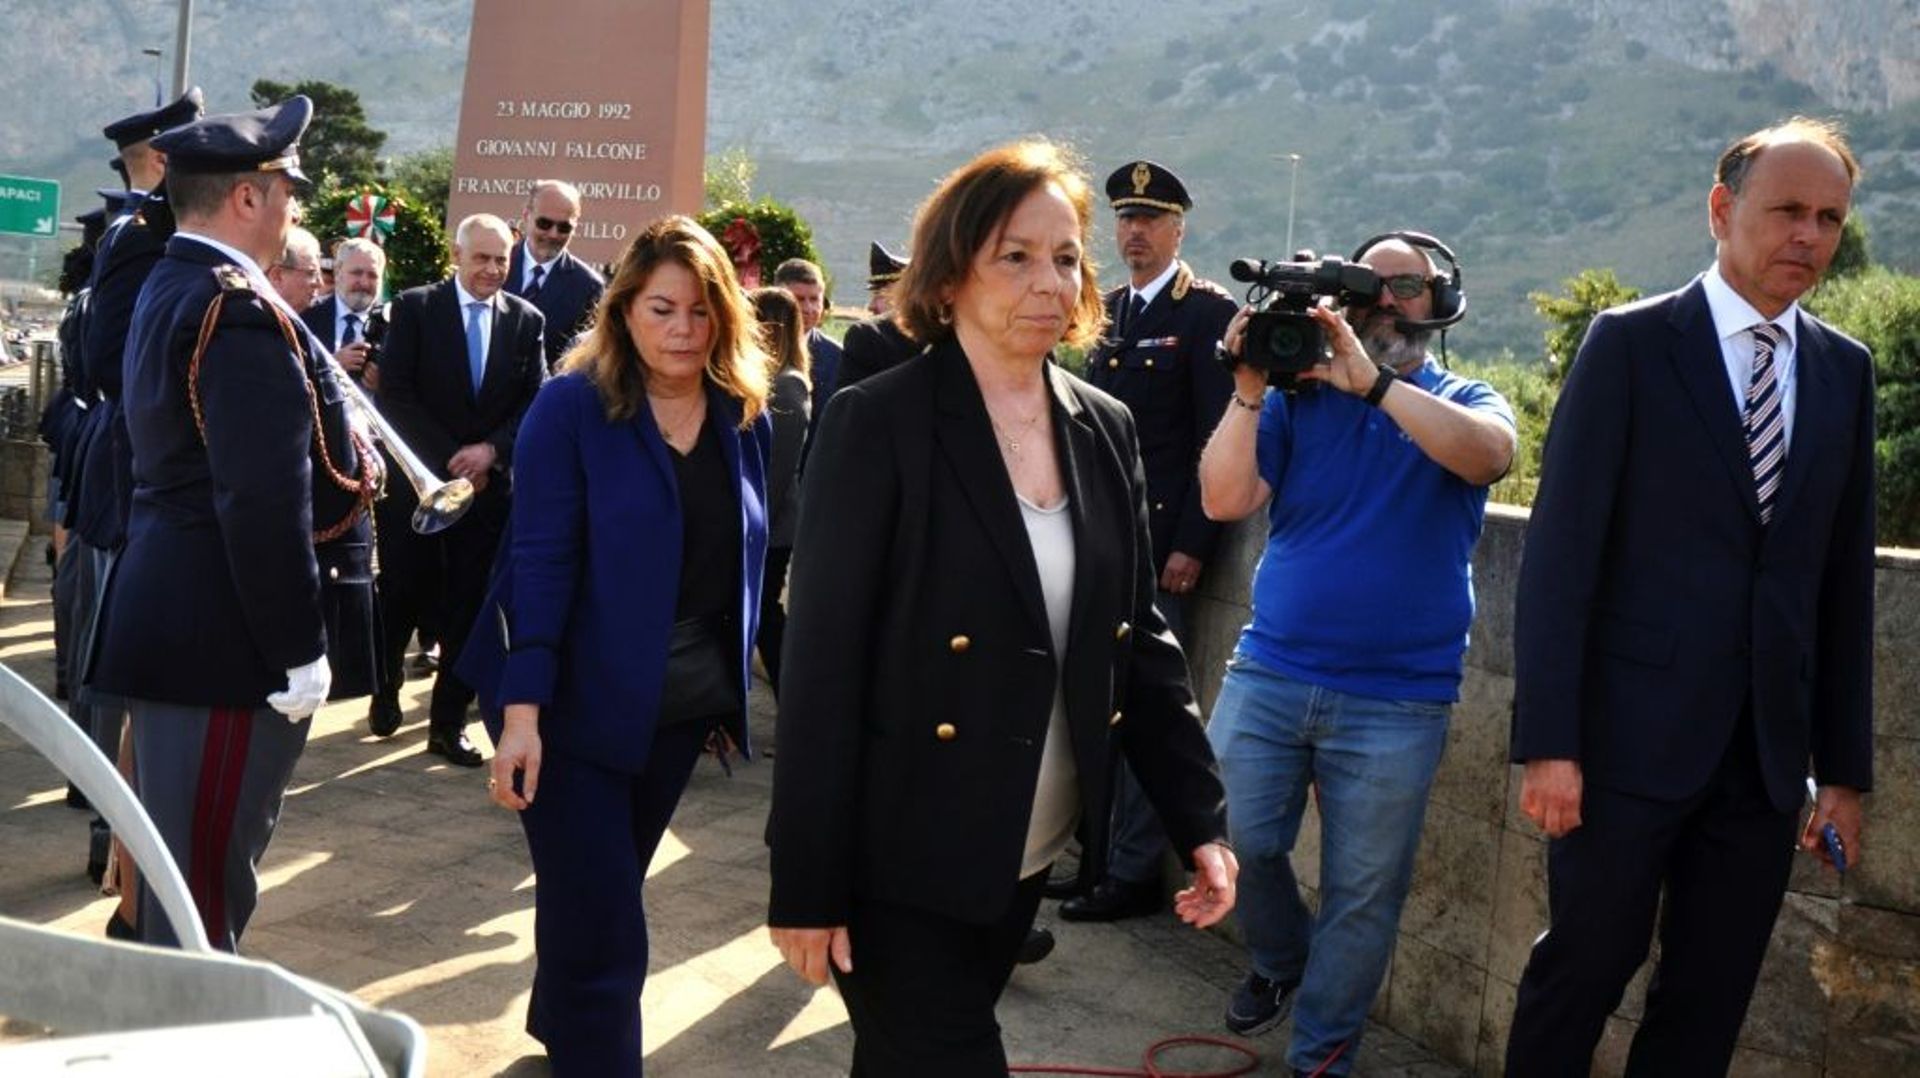 La ministre italienne de l’Intérieur, Luciana Lamorgese, assiste à une cérémonie marquant le 30e anniversaire de l’assassinat du juge Giovanni Falcone, le 23 mai 2022